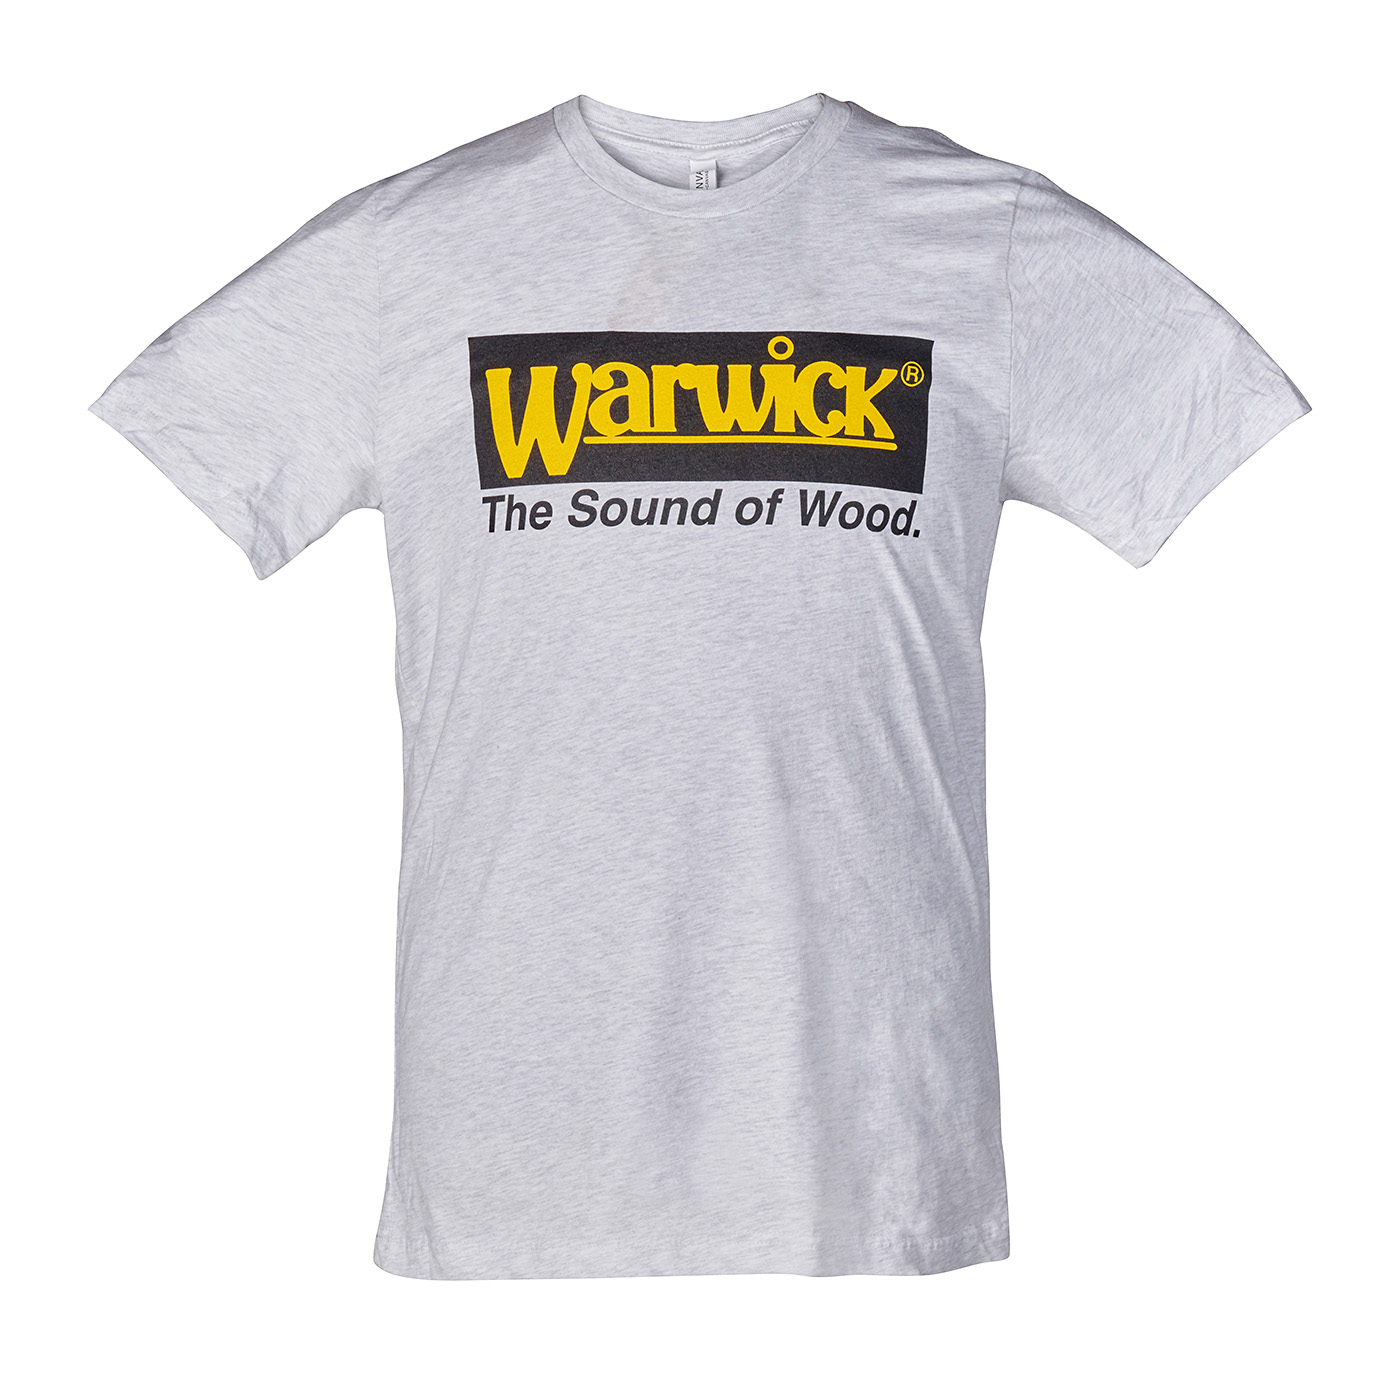 Warwick Promo - Vintage Logo T-Shirt, Gray - Size XL